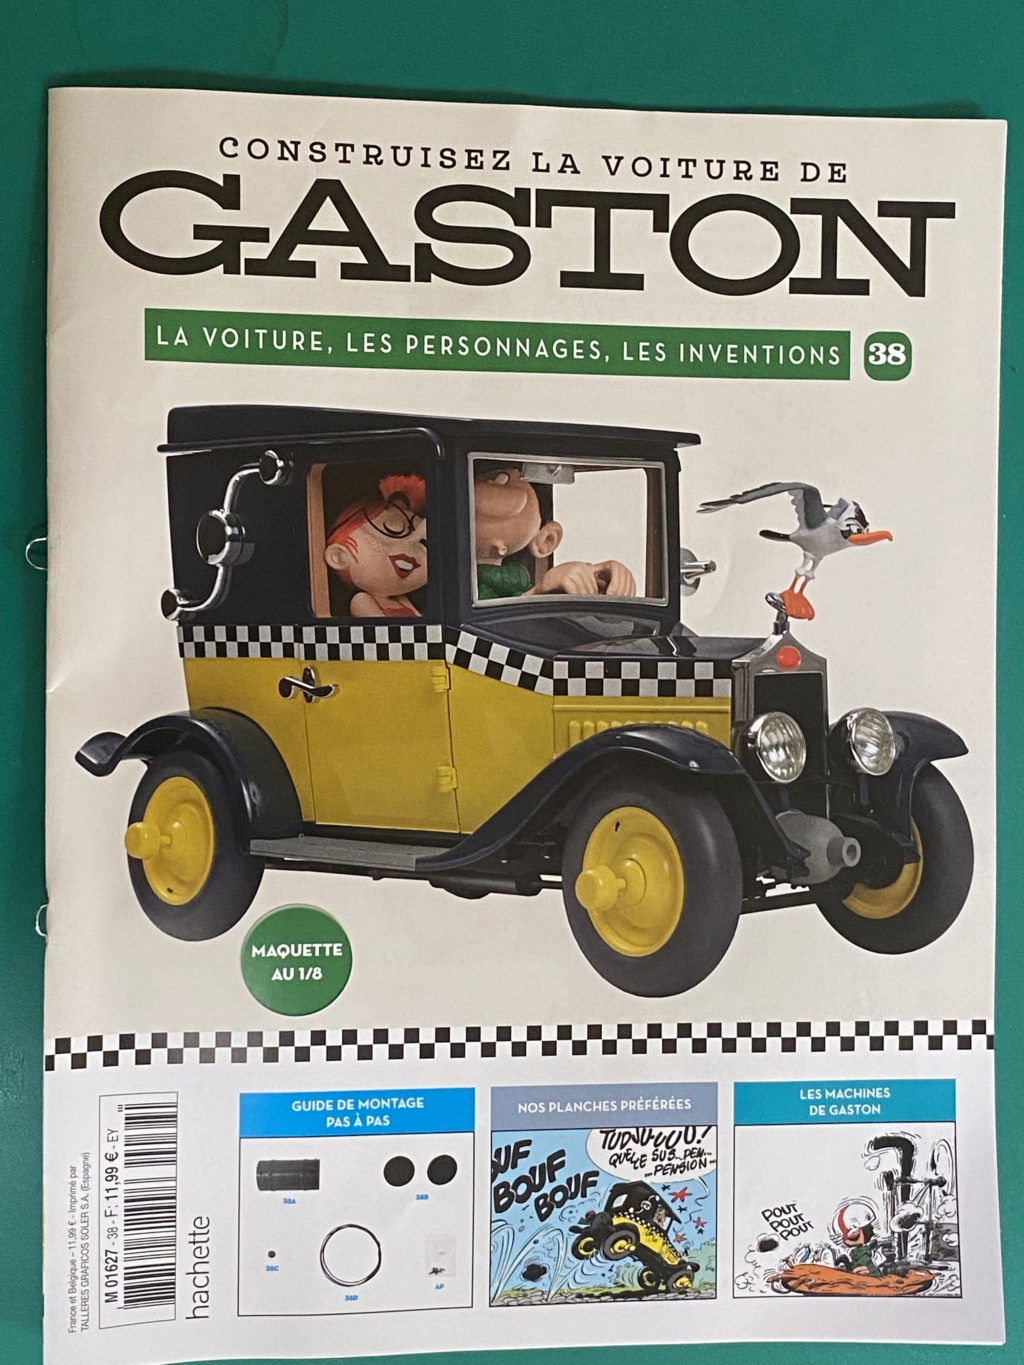 Voiture de Gaston [Hachette 1/8°] de Grenouille1954 - Page 4 A4e60210